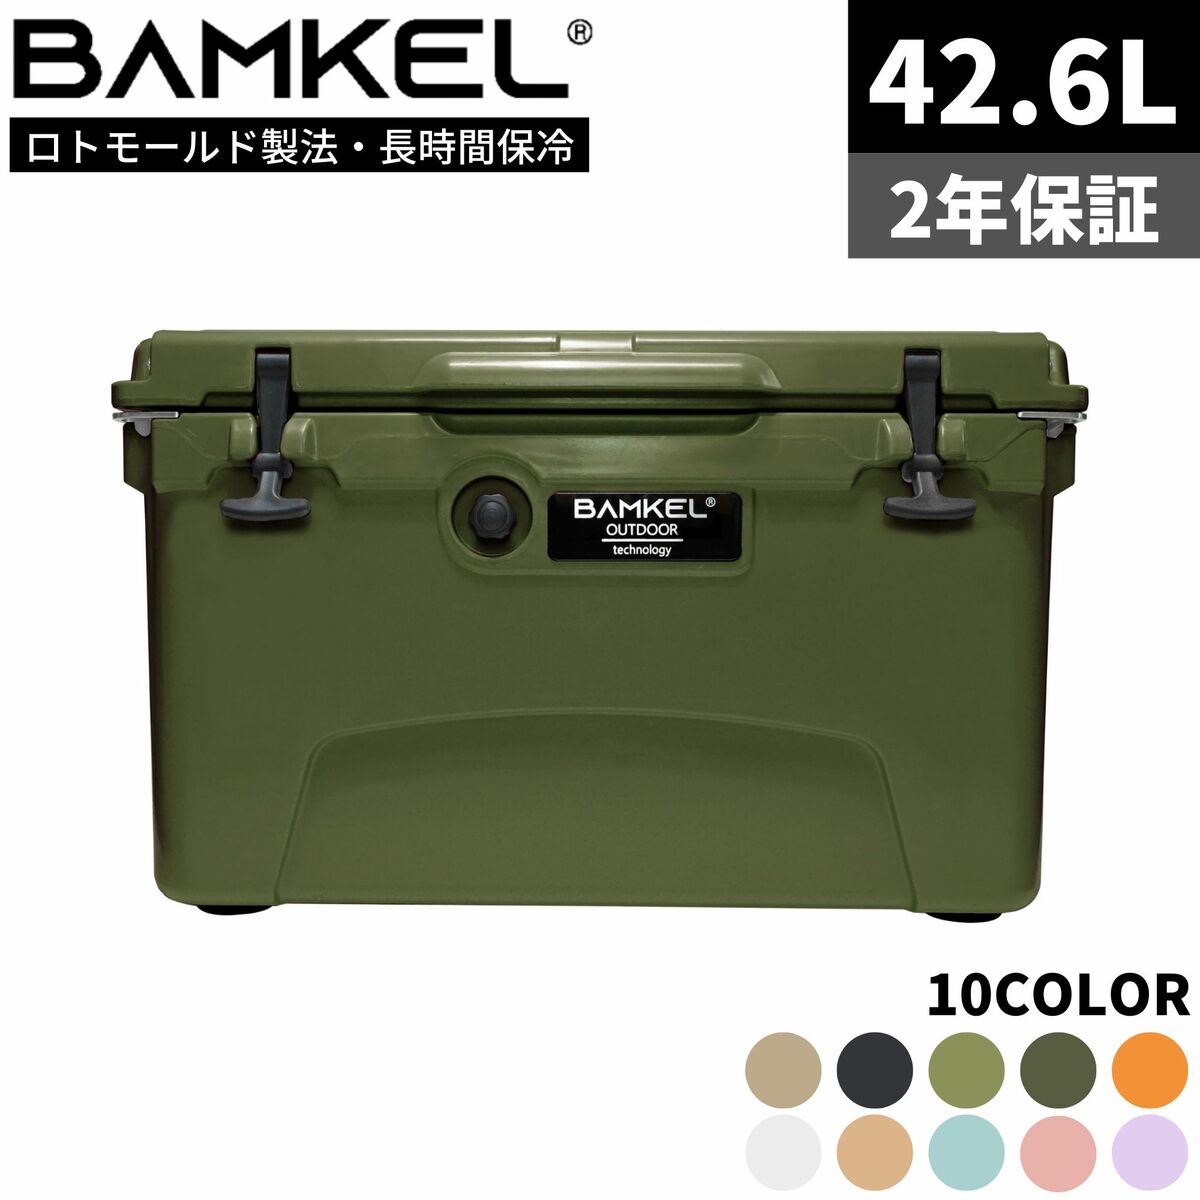 BAMKEL バンケル クーラーボックス 42.6L 長時間 保冷 選べるカラー サイズ 高耐久 ハードクーラー アウトドア キャンプ 韓国ブランド カーキ 正規品